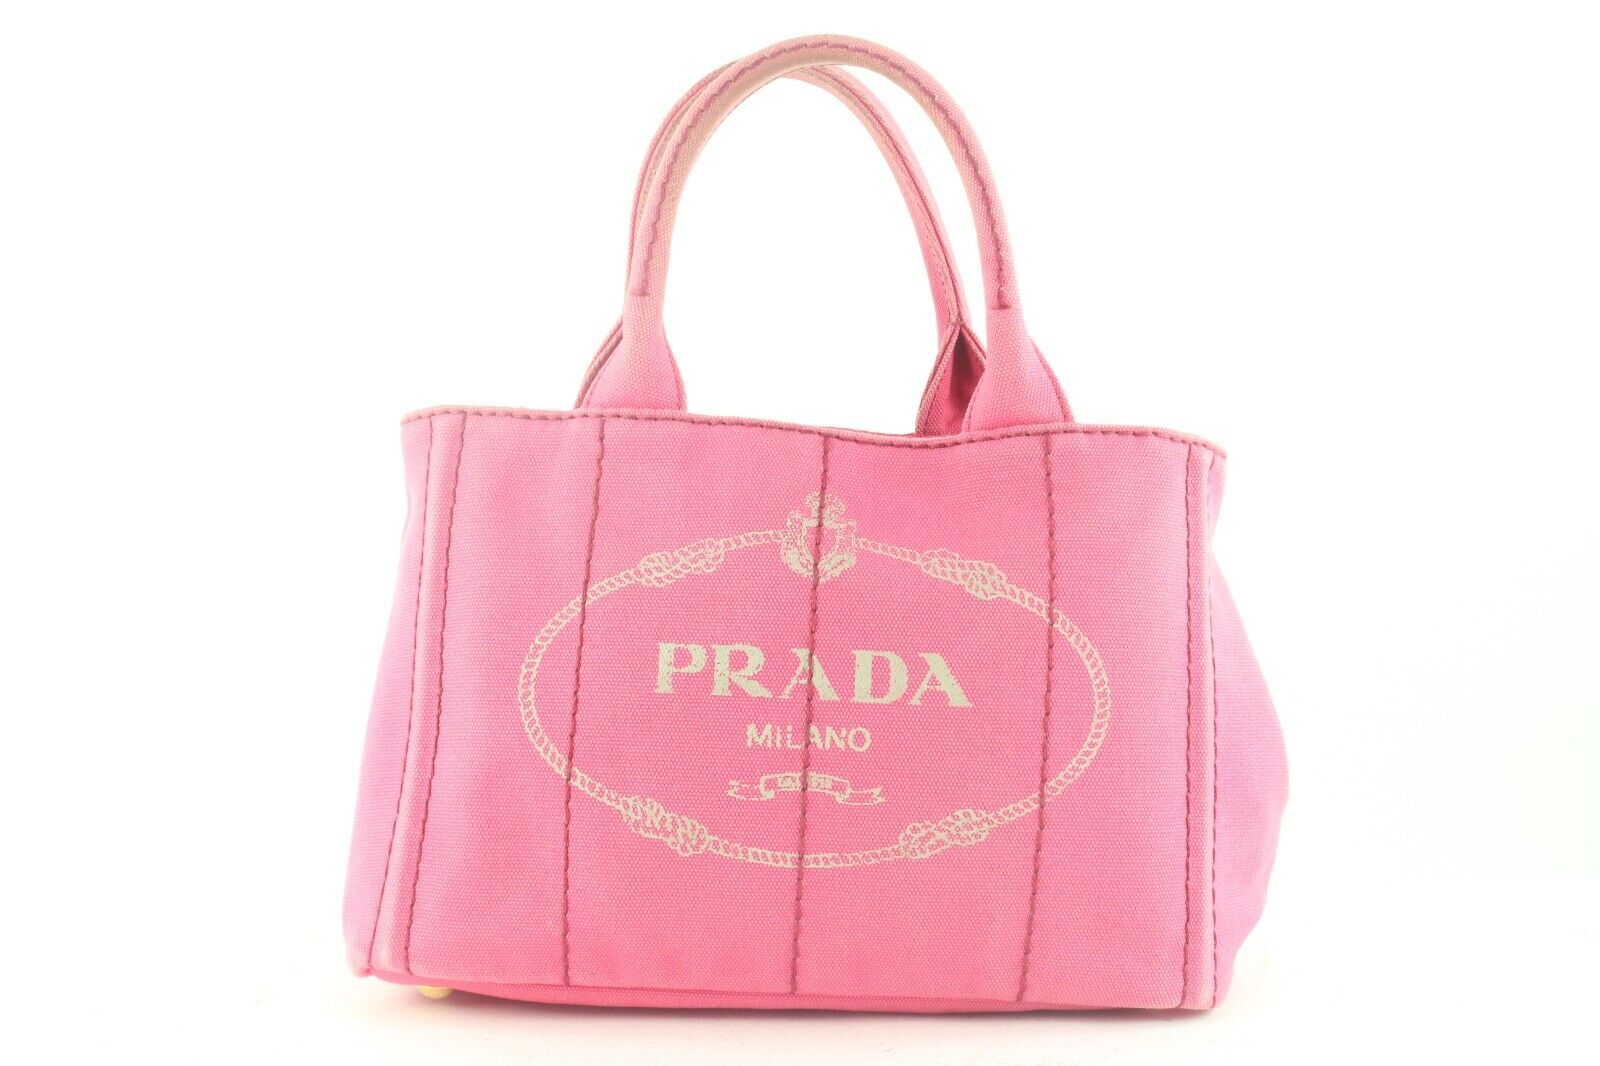 Where can you buy a replica Prada handbag? - Quora